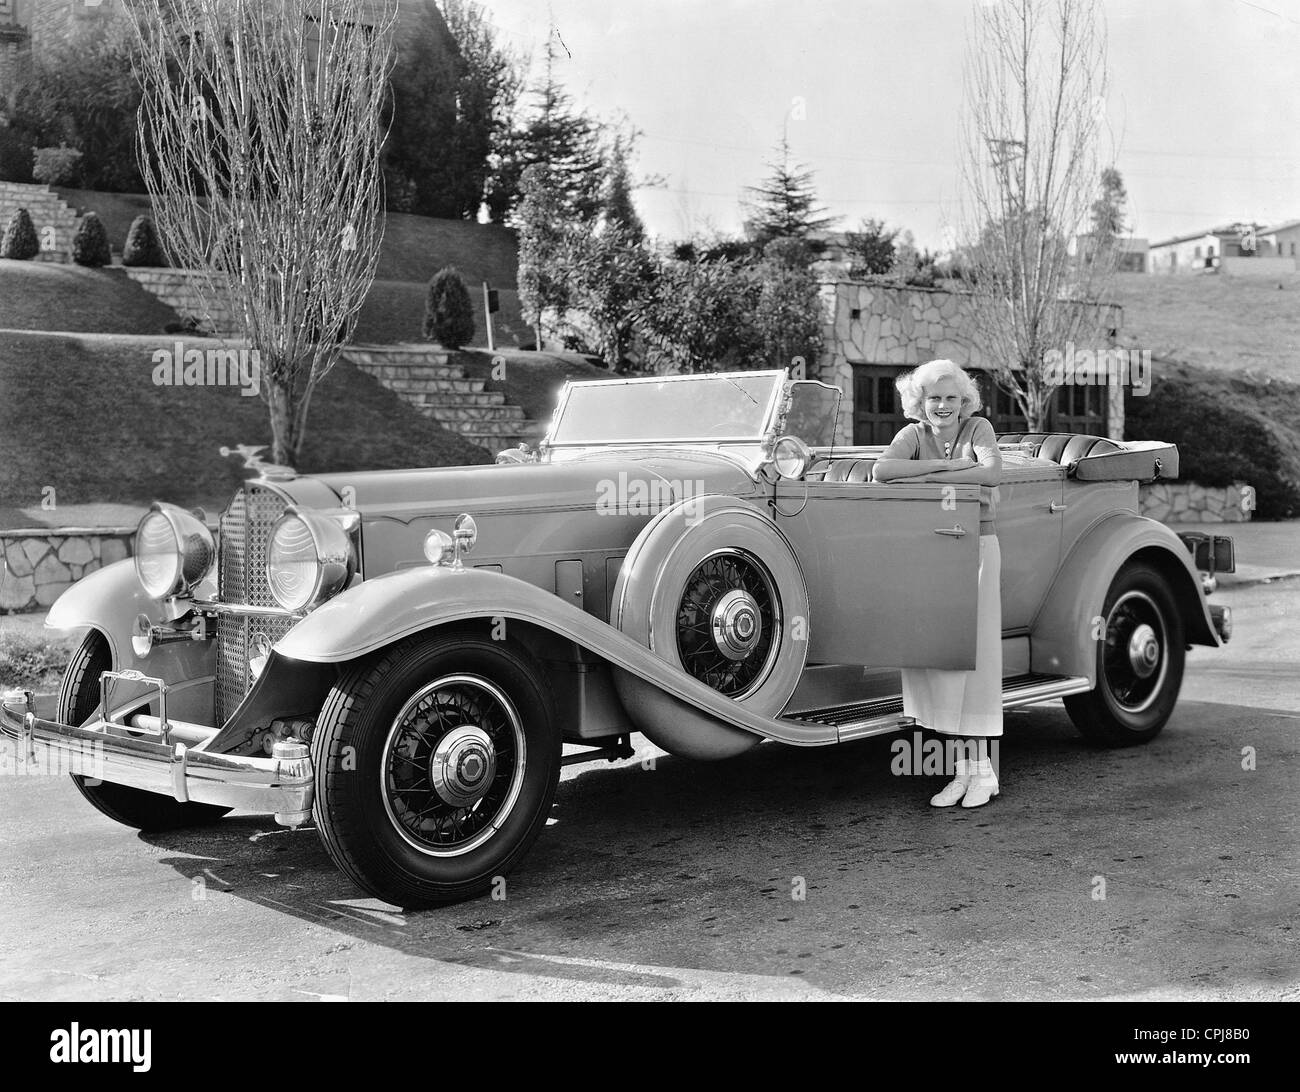 Jean Harlow avec une Packard, 1932/33 Banque D'Images